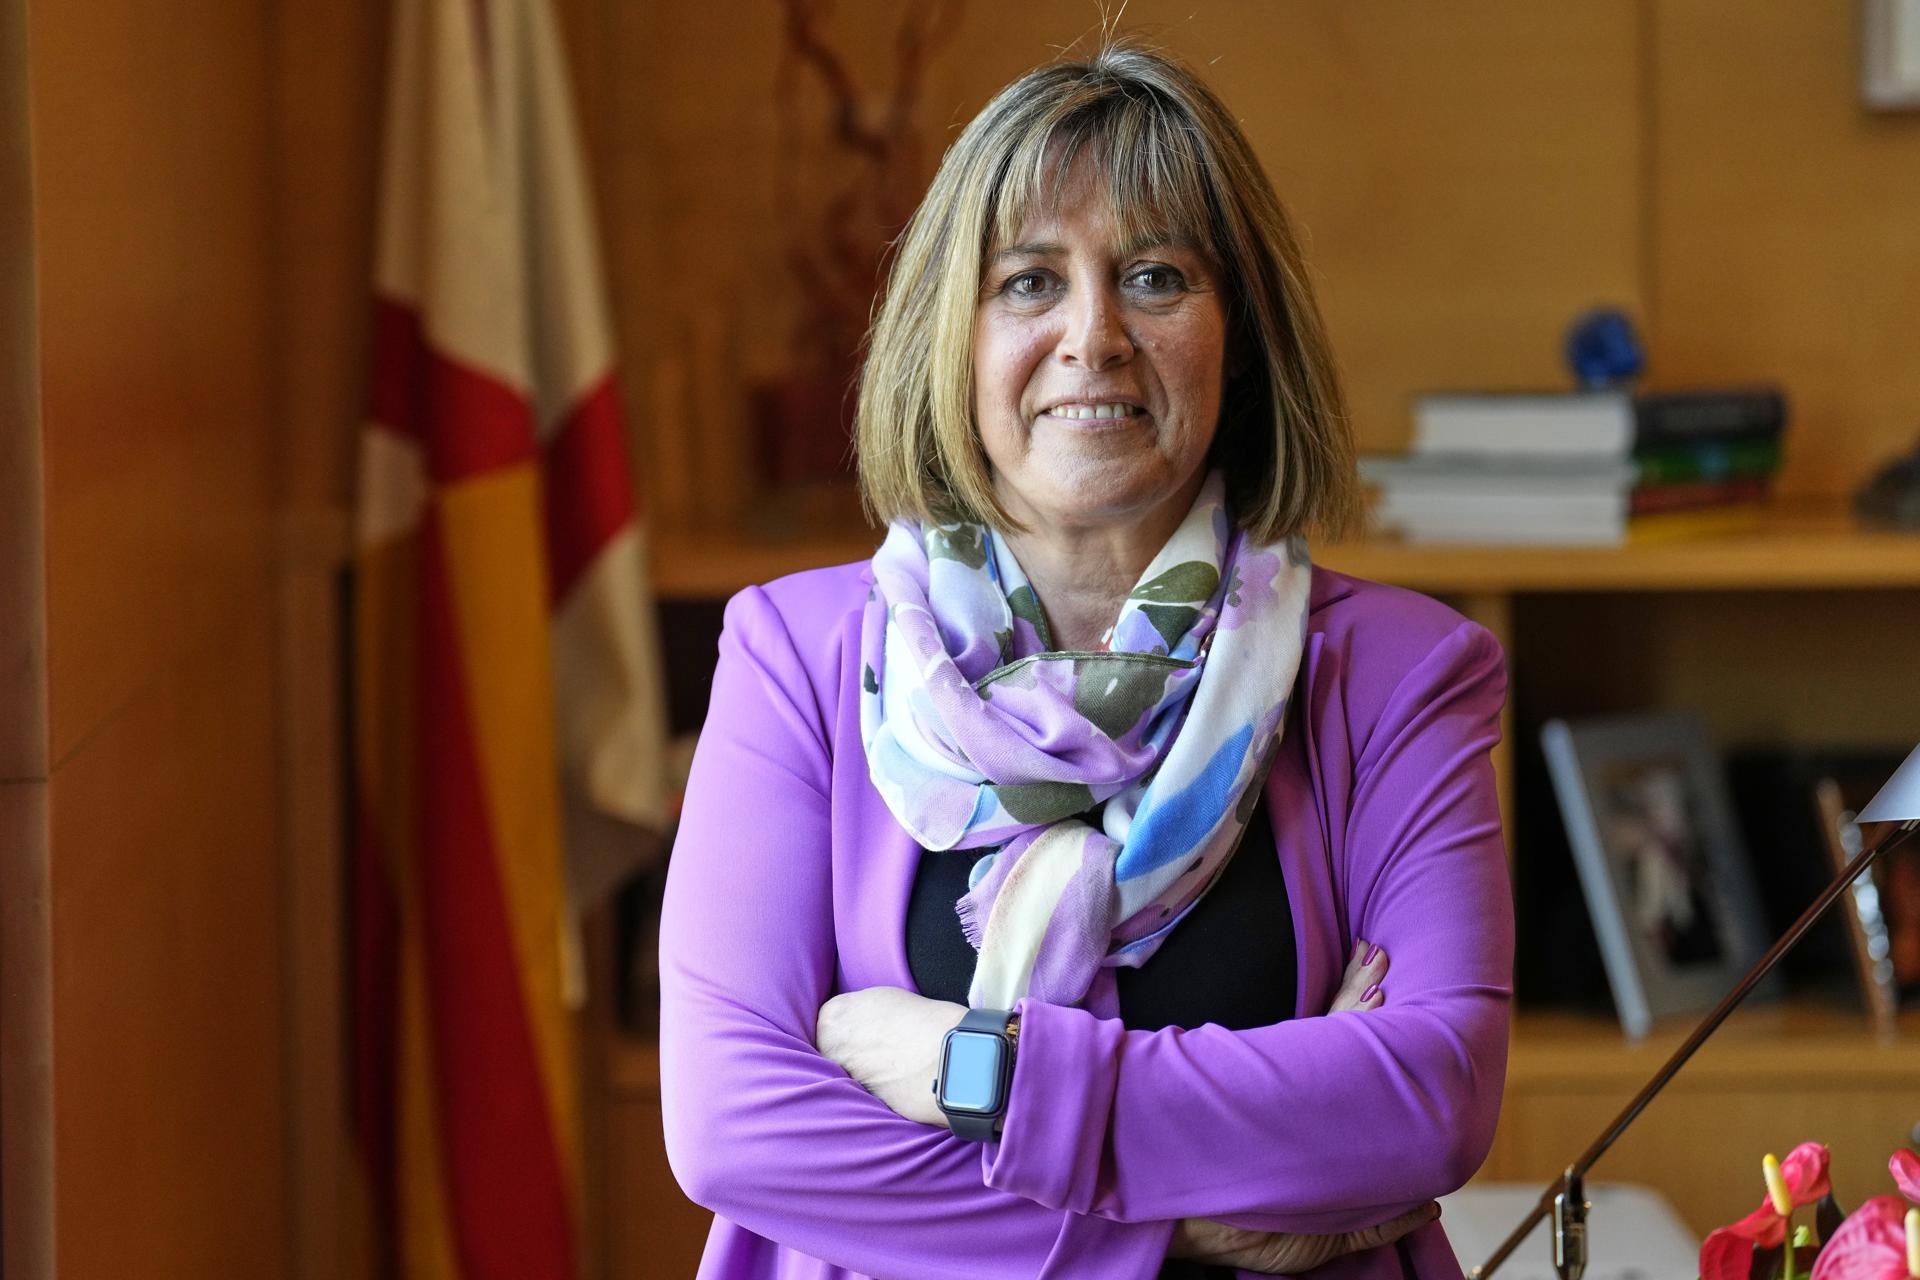 La presidenta de la Diputación de Barcelona, la socialista Núria Marín, durante una entrevista con EFE en la que ha dicho que avala repetir el pacto con Junts en la institución provincial si vuelven a sumar mayoría en las próximas elecciones municipales.